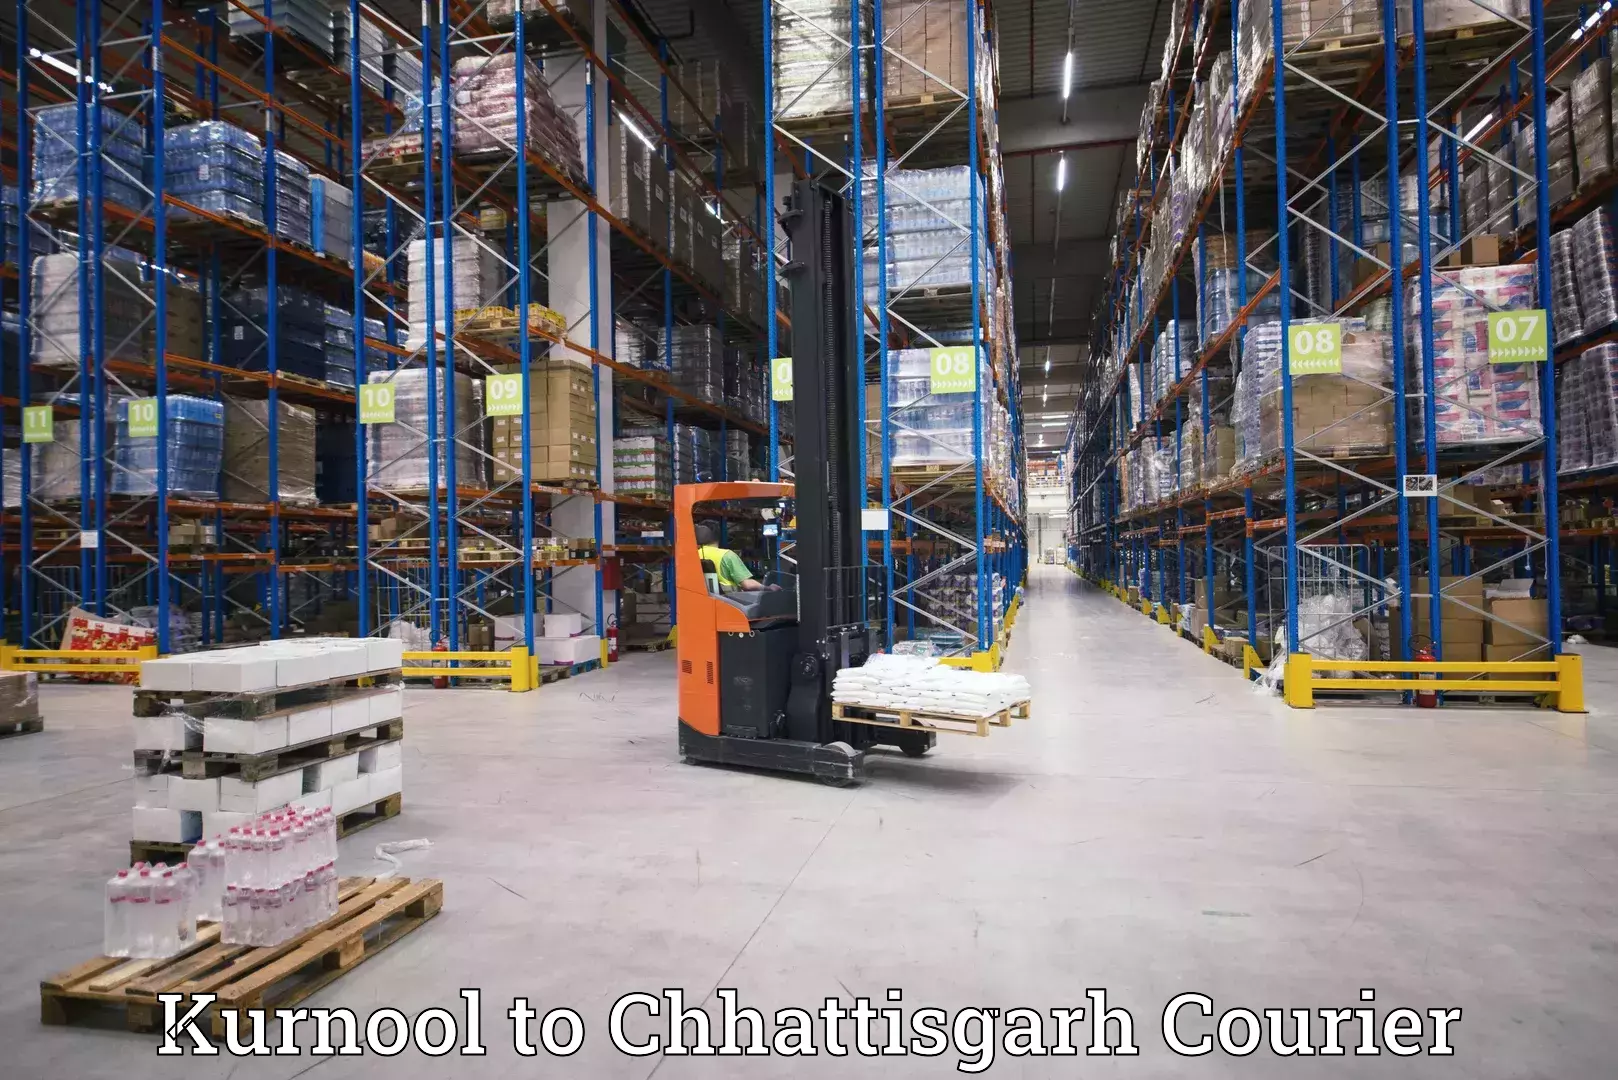 Small business couriers Kurnool to Raigarh Chhattisgarh